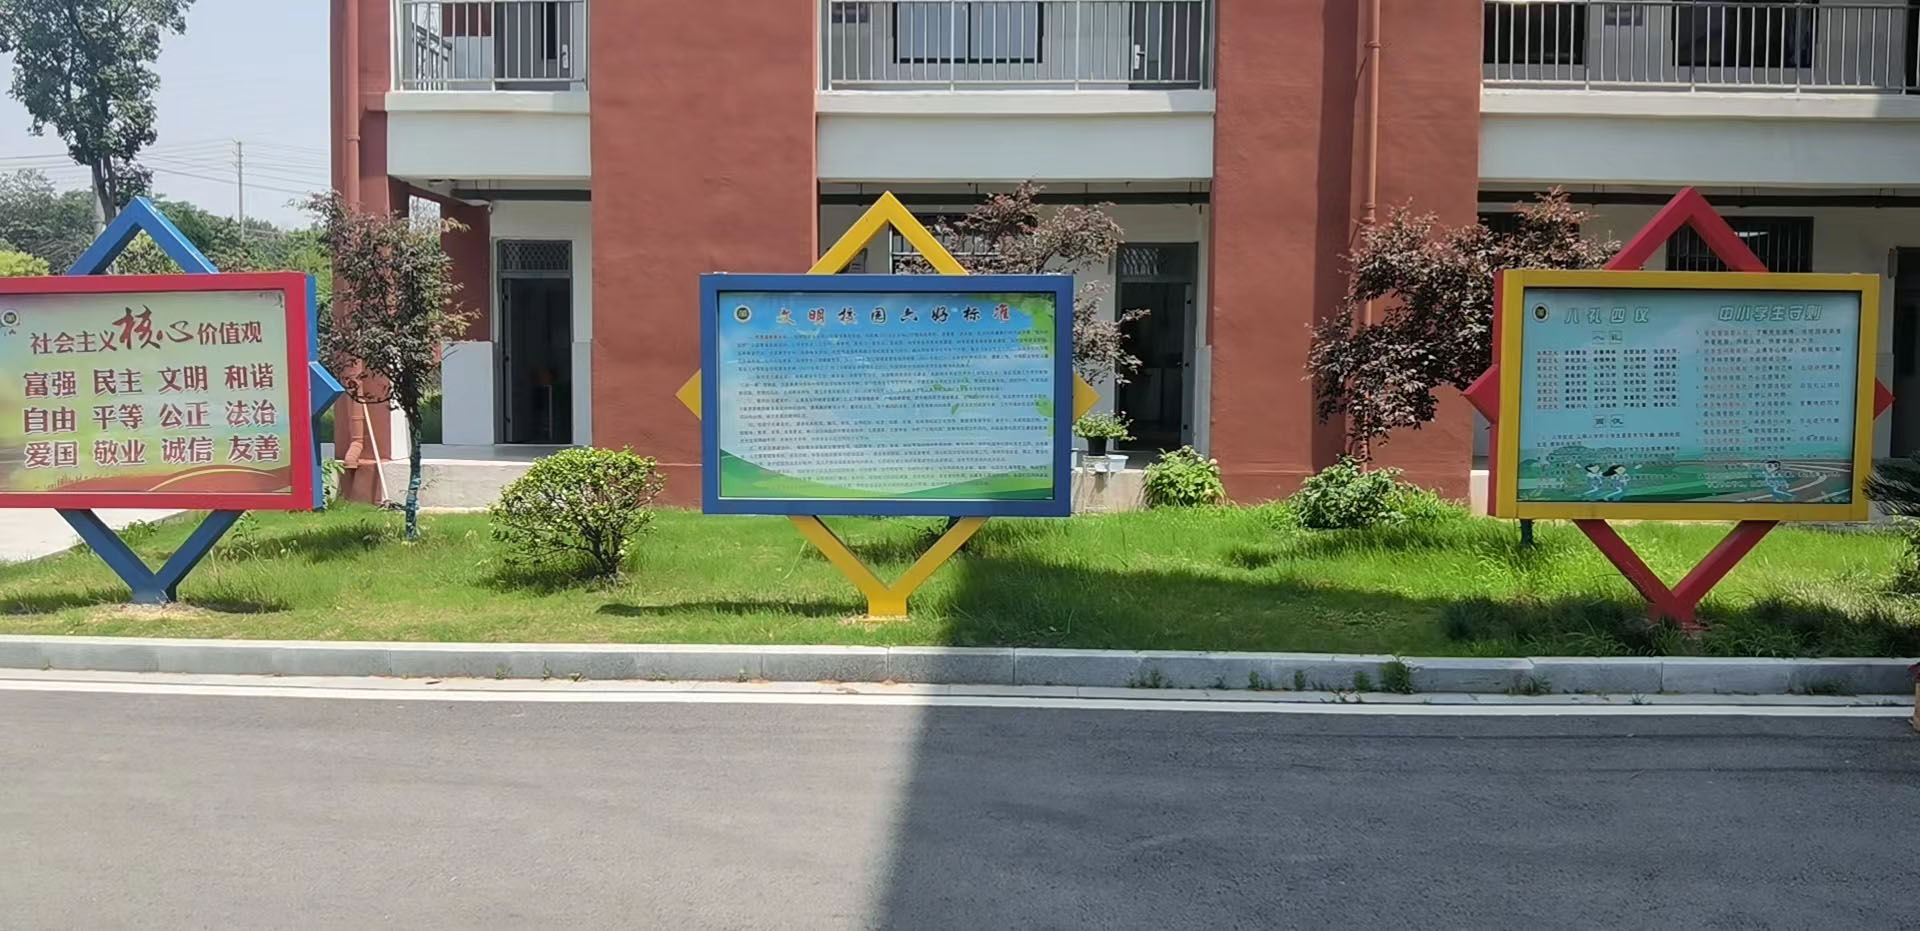 新安学校宣传栏设备生产厂家